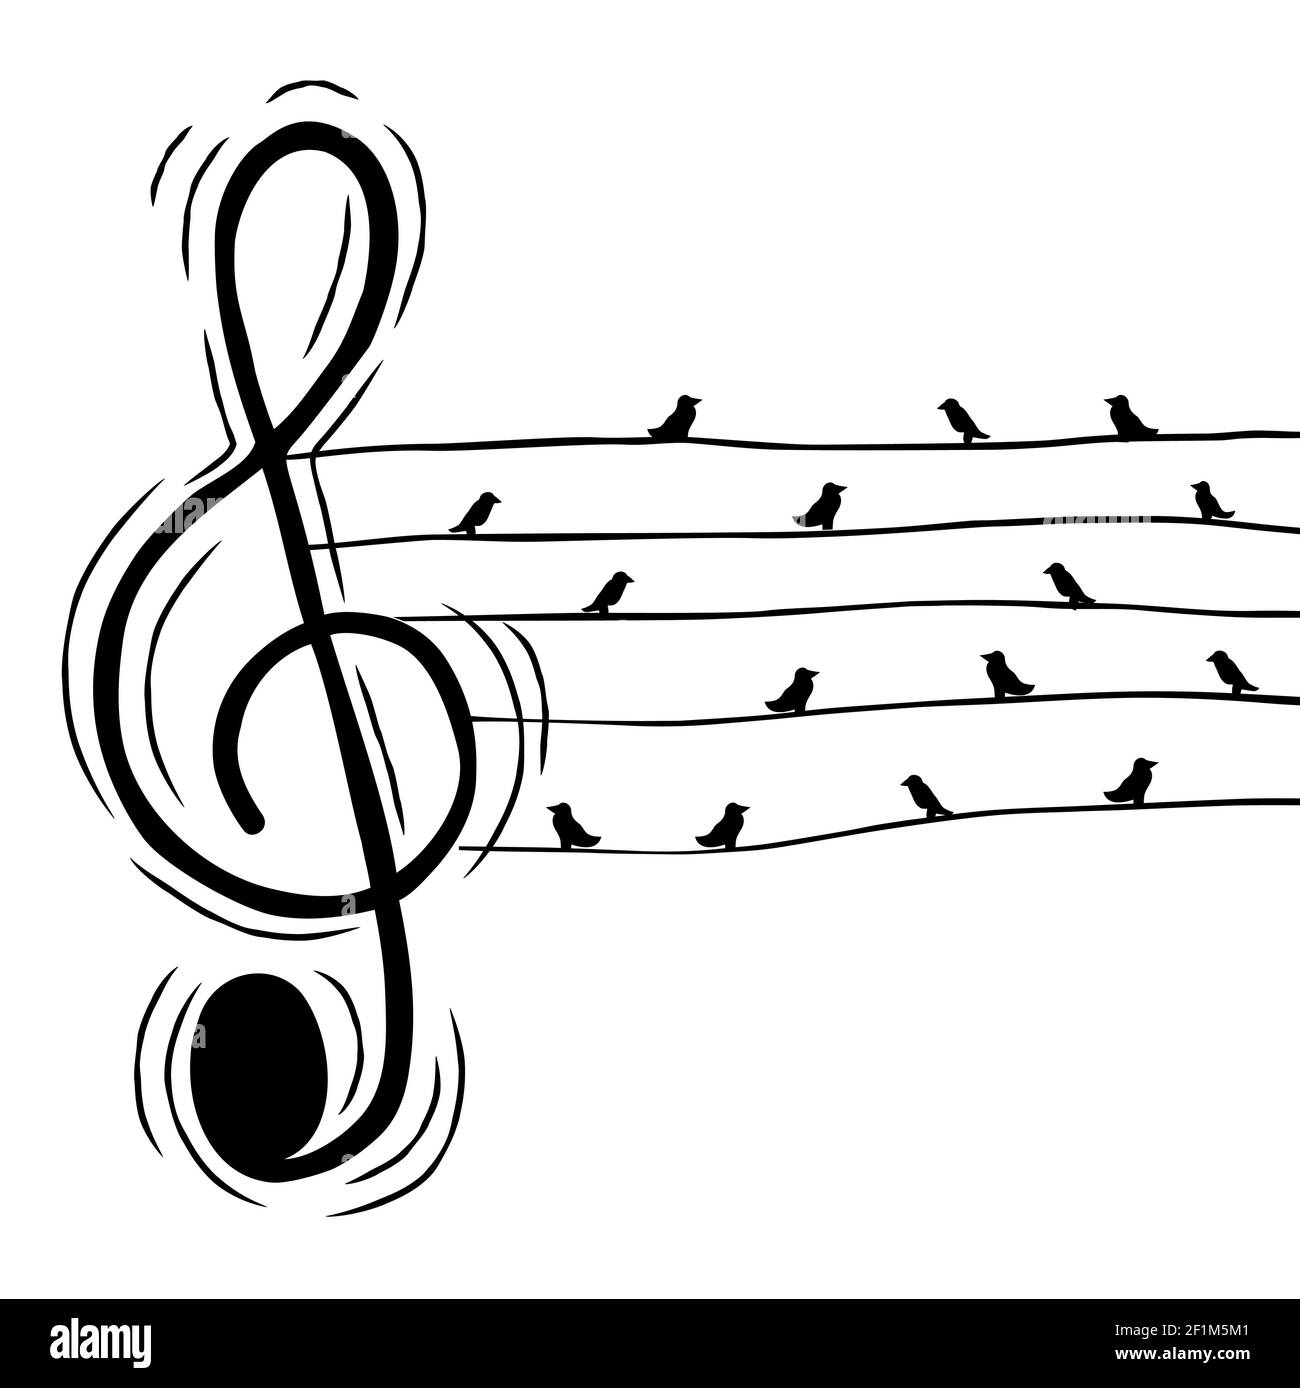 Musik-Treble-Schlüssel-Note mit Vögeln in Draht Illustration für musikalische Veranstaltung oder Natur Sound-Konzept. Handgezeichnete Karikatur auf isoliertem Hintergrund. Stock Vektor